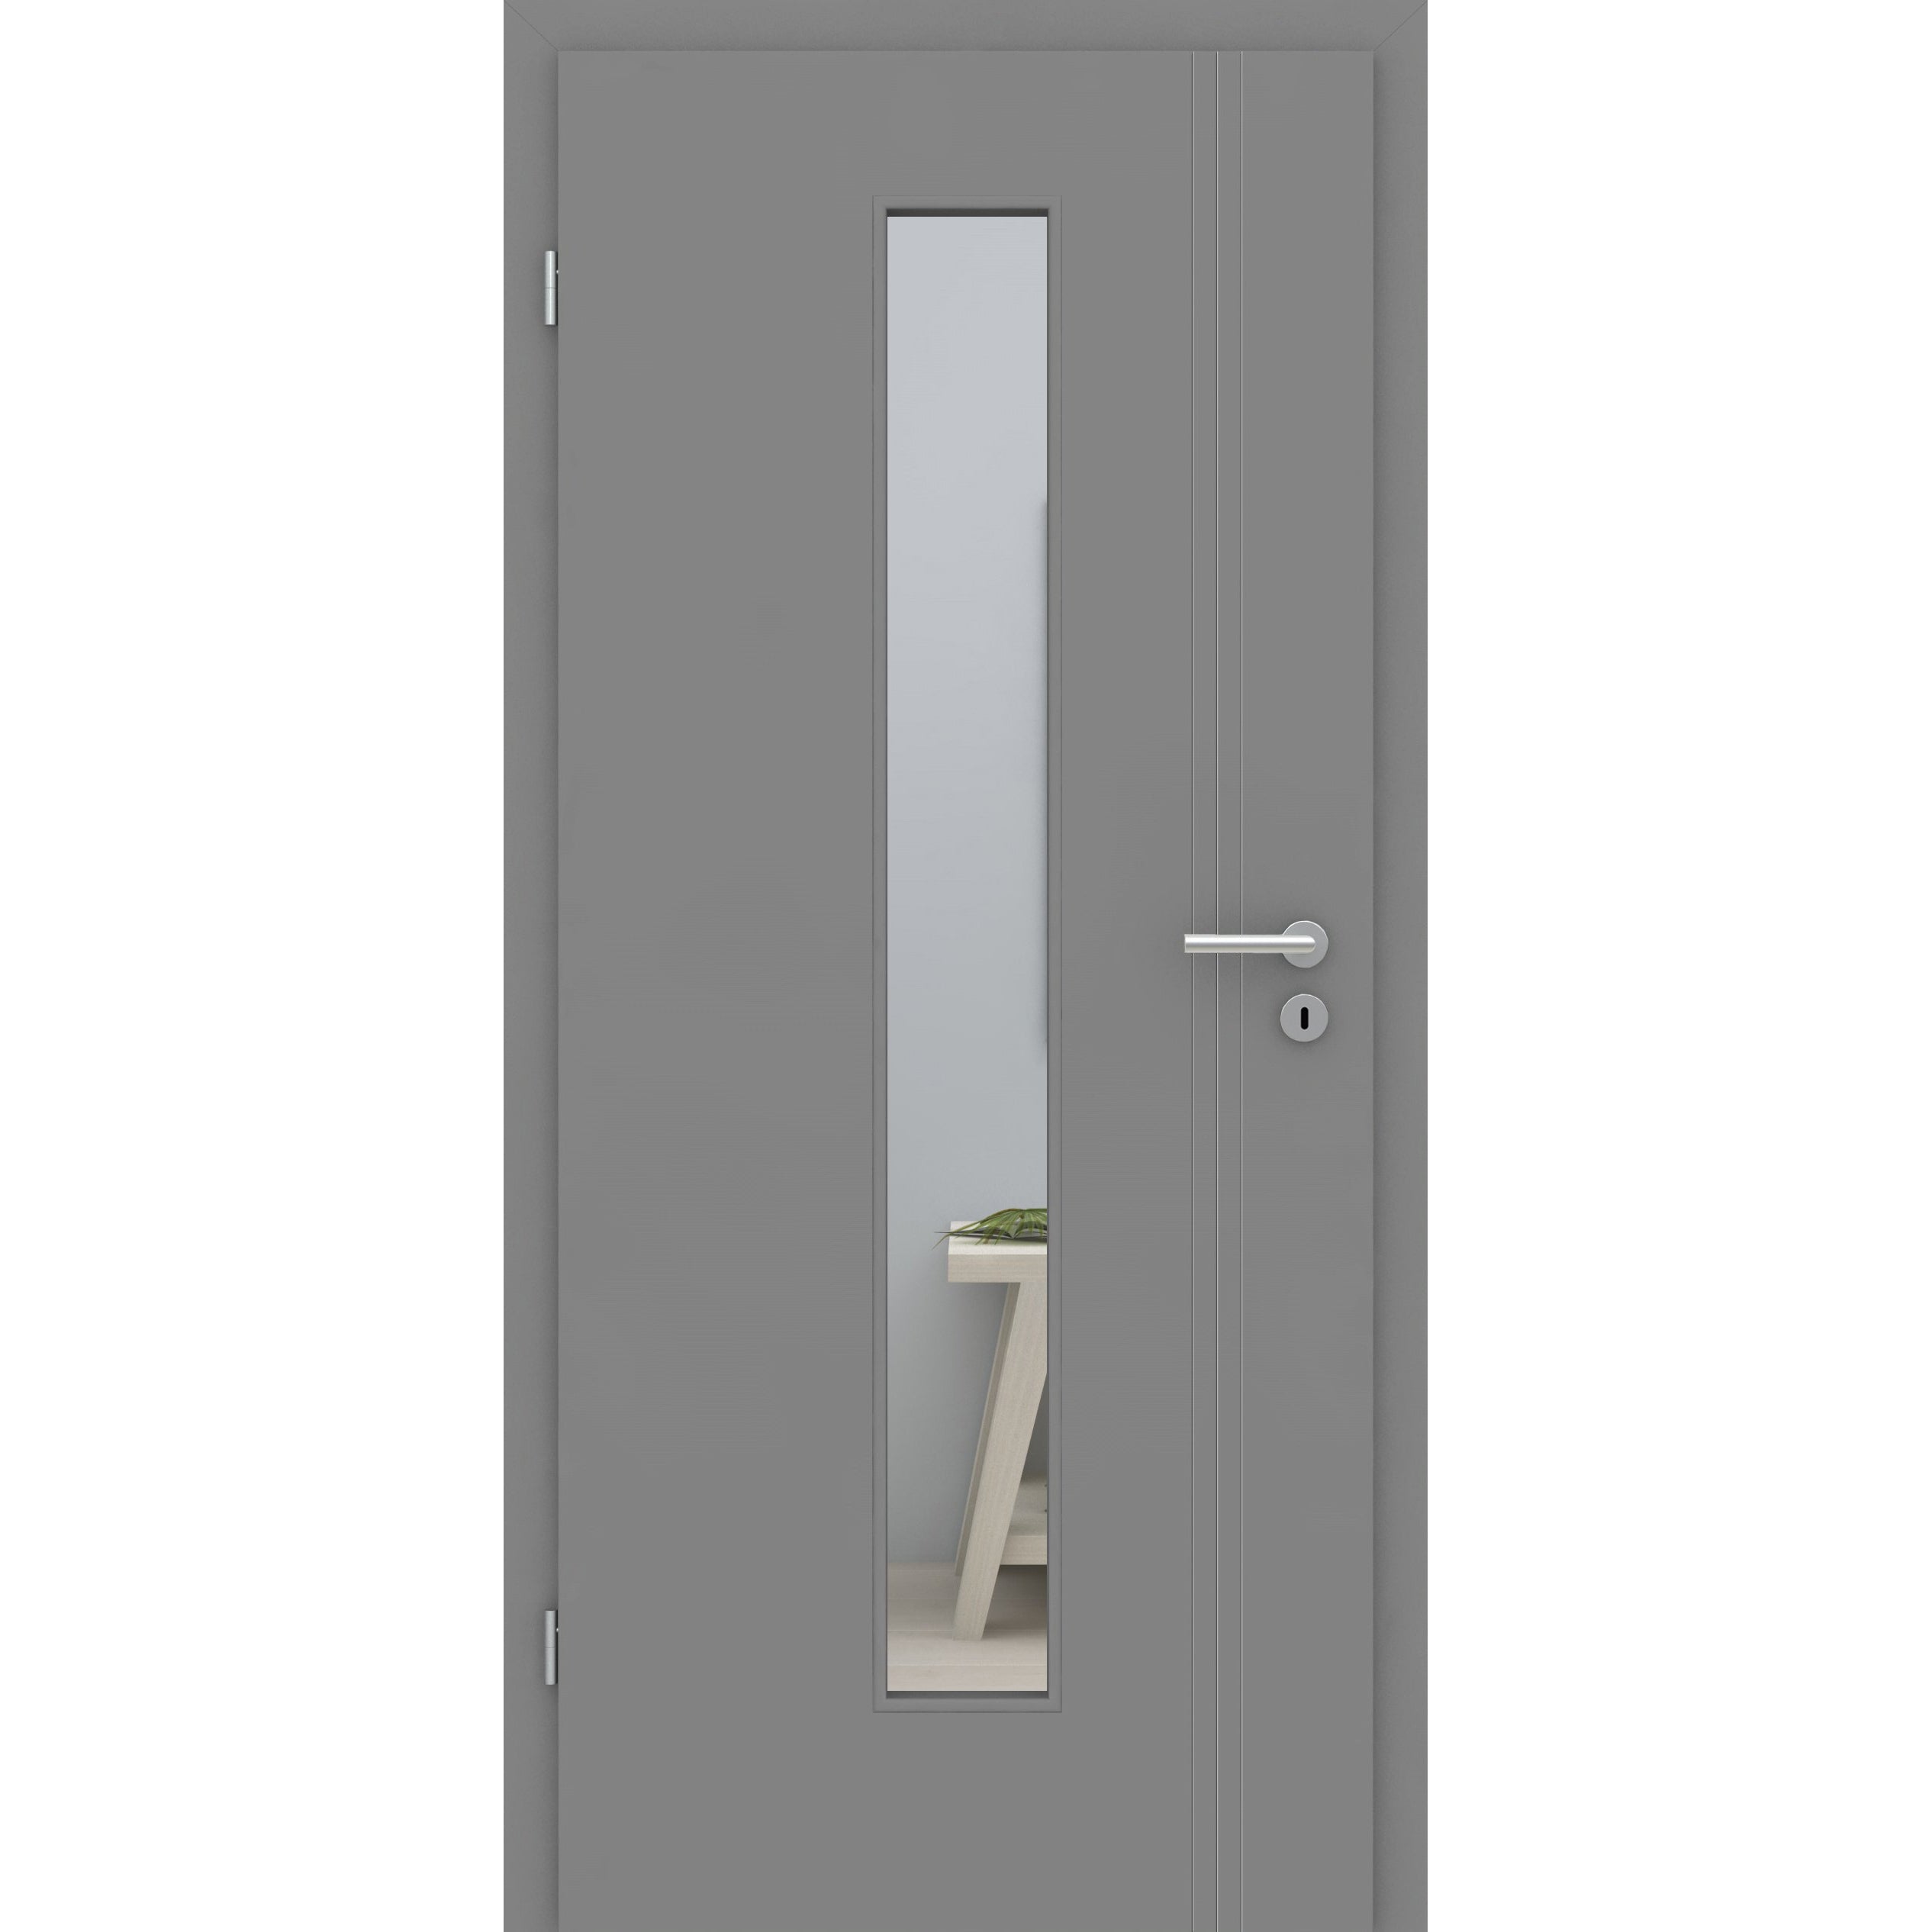 Zimmertür mit Lichtausschnitt grau 3 Rillen aufrecht Schlosseite Designkante - Modell Designtür VS37LAM